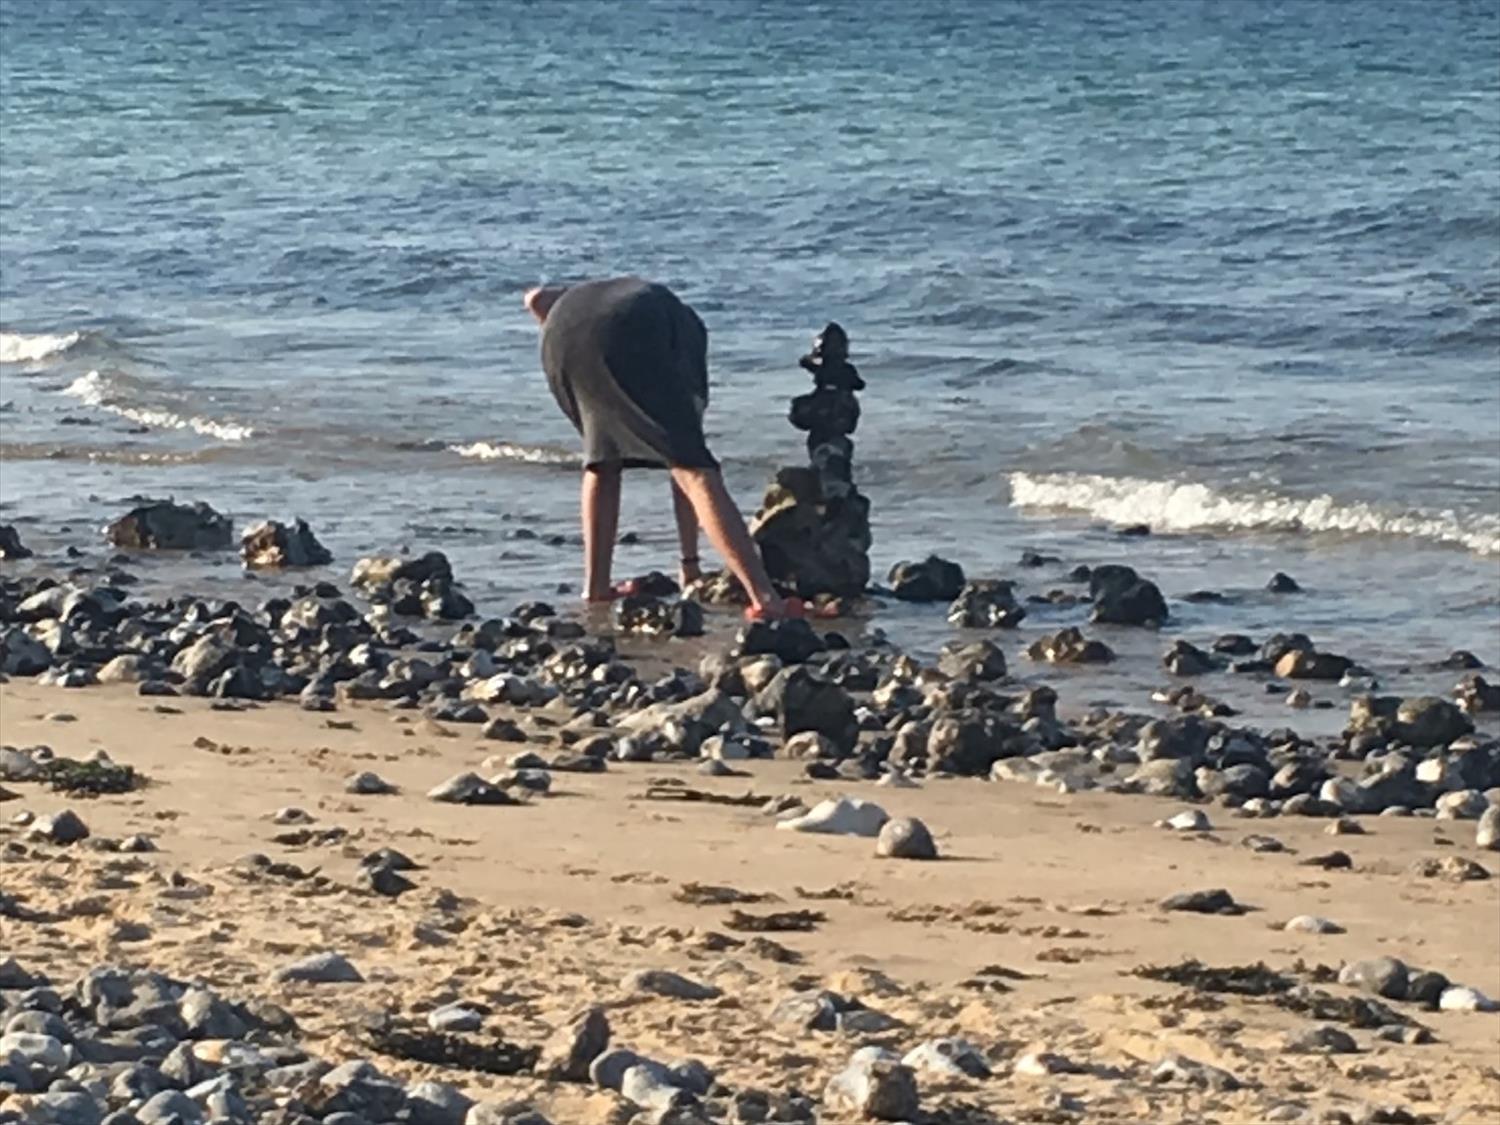 Pebble sculpture on East Runton beach @NorfolkCoastline